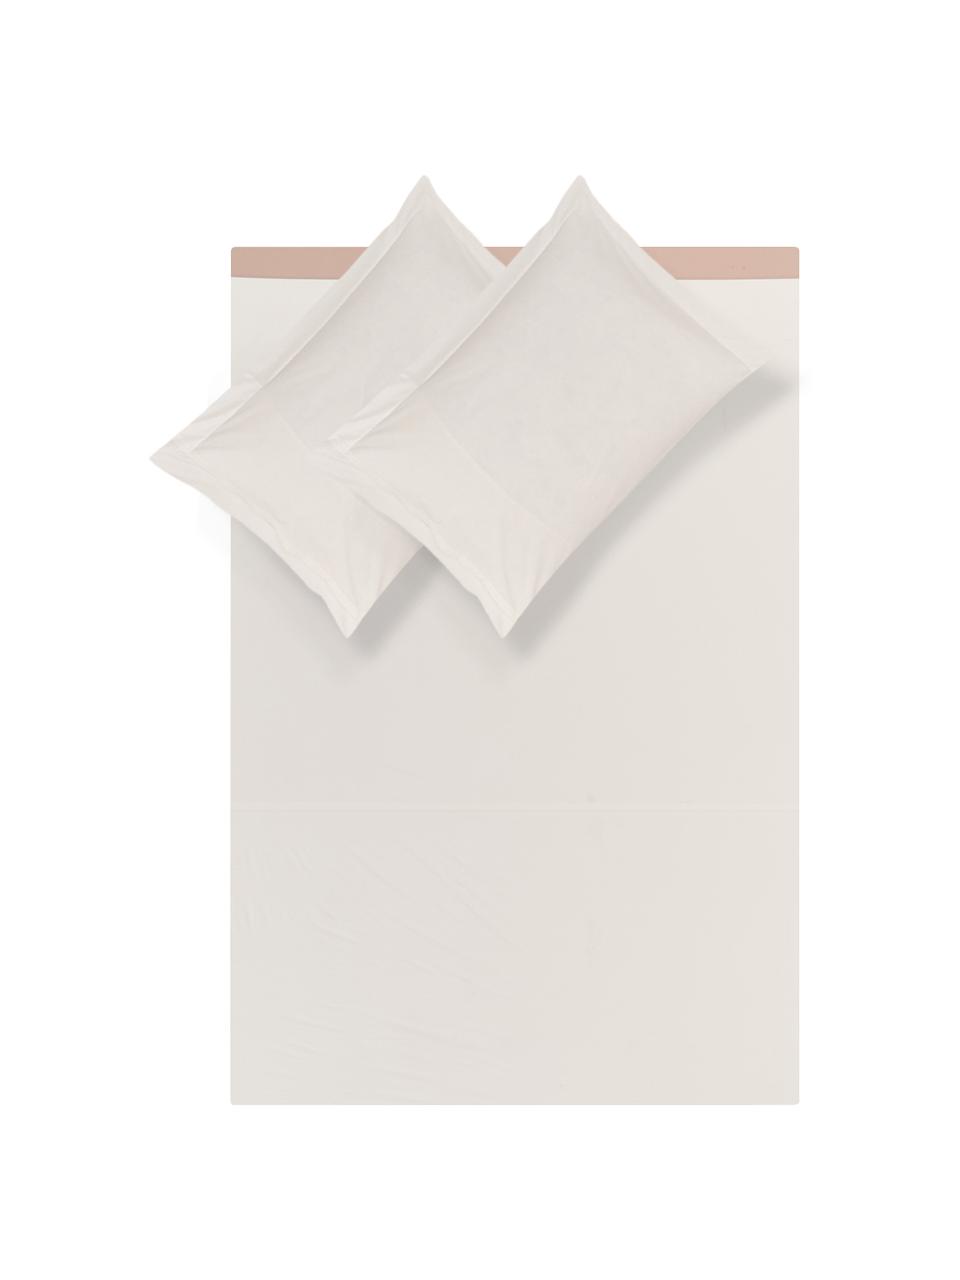 Set lenzuola in percalle Plein, Tessuto: percalle Il percalle è un, Rosa, bianco latteo, 260 x 295 cm + 2 federe 50 x 80 cm x lenzuola 180 x 200 cm